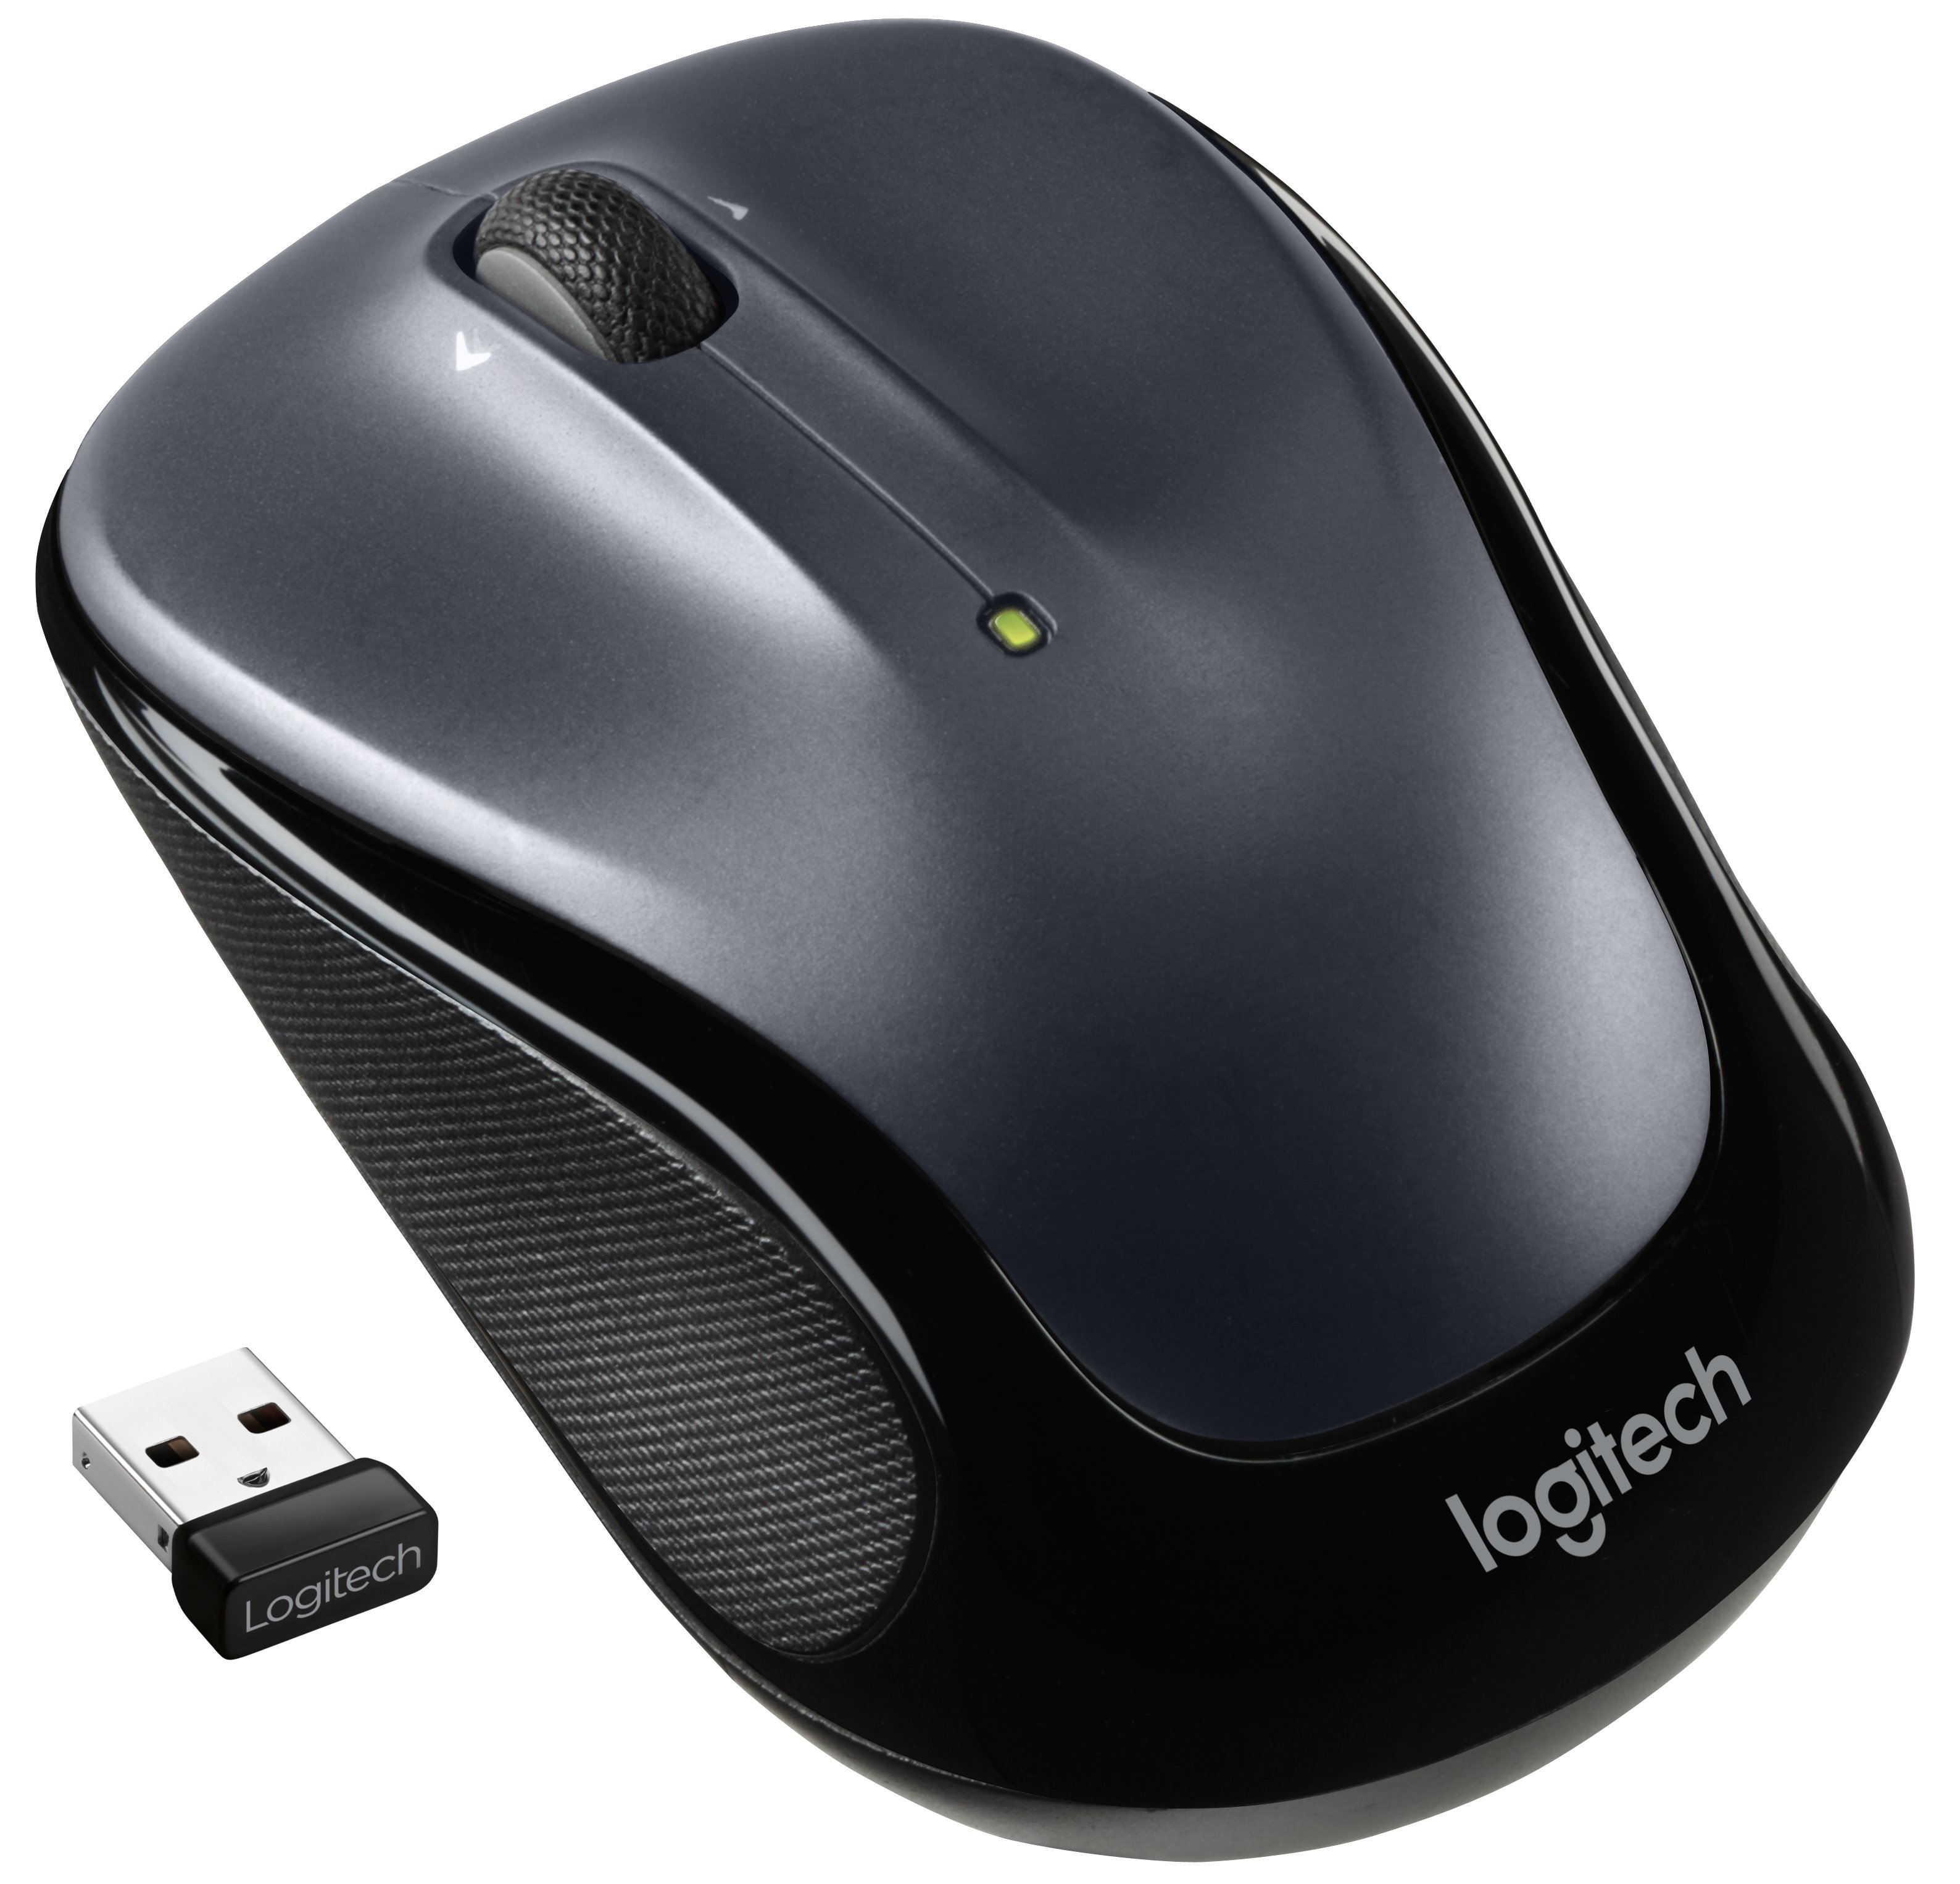 Logitech Mouse ZM325s / 910-006812 Grey